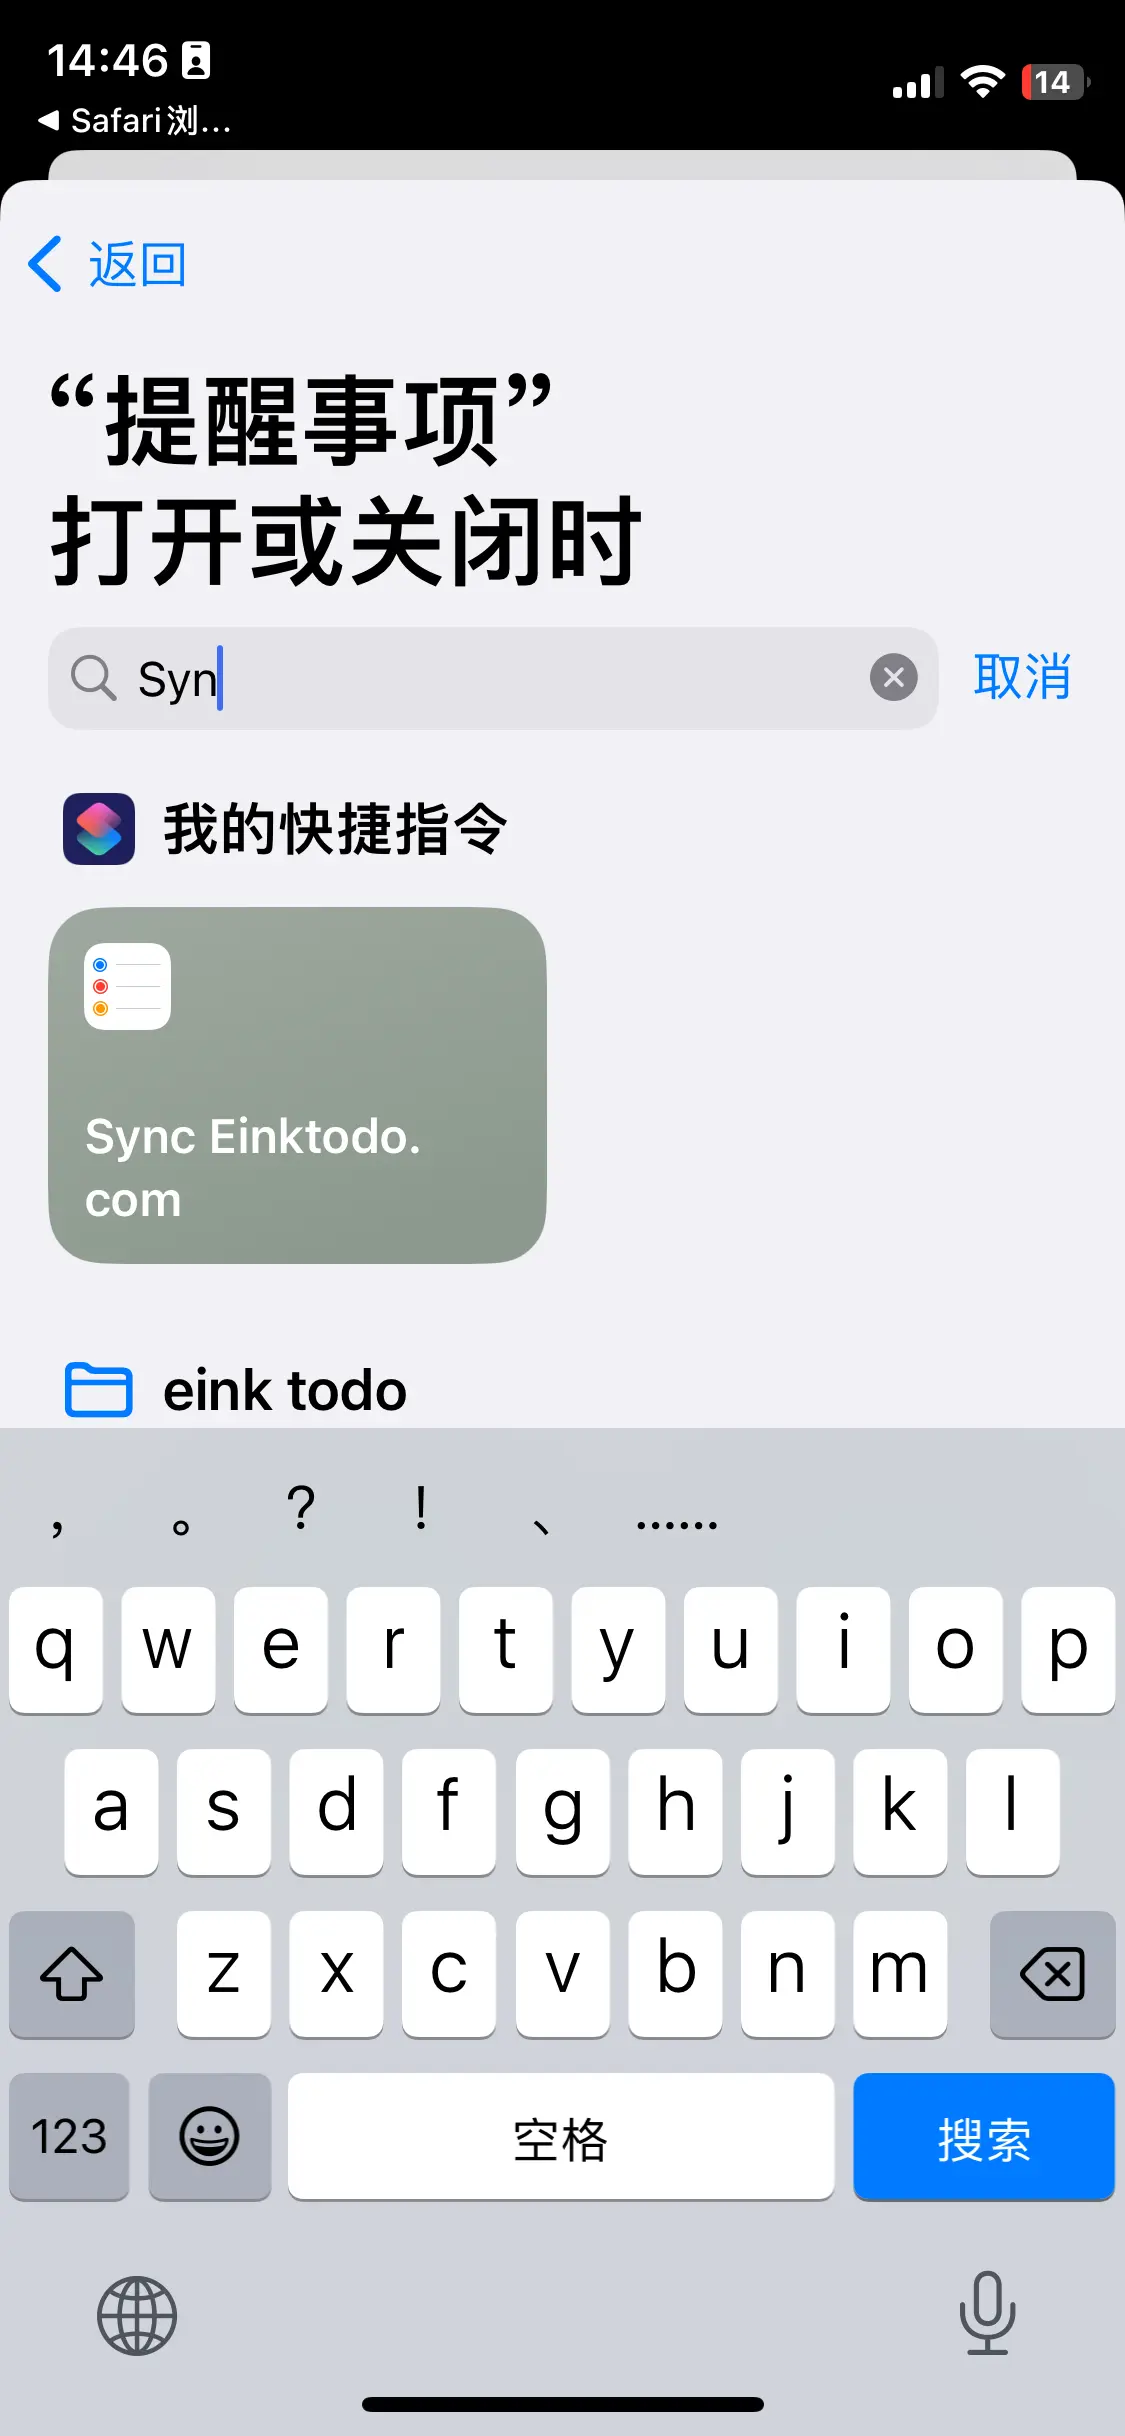 选择 Sync Einktodo.com 快捷指令